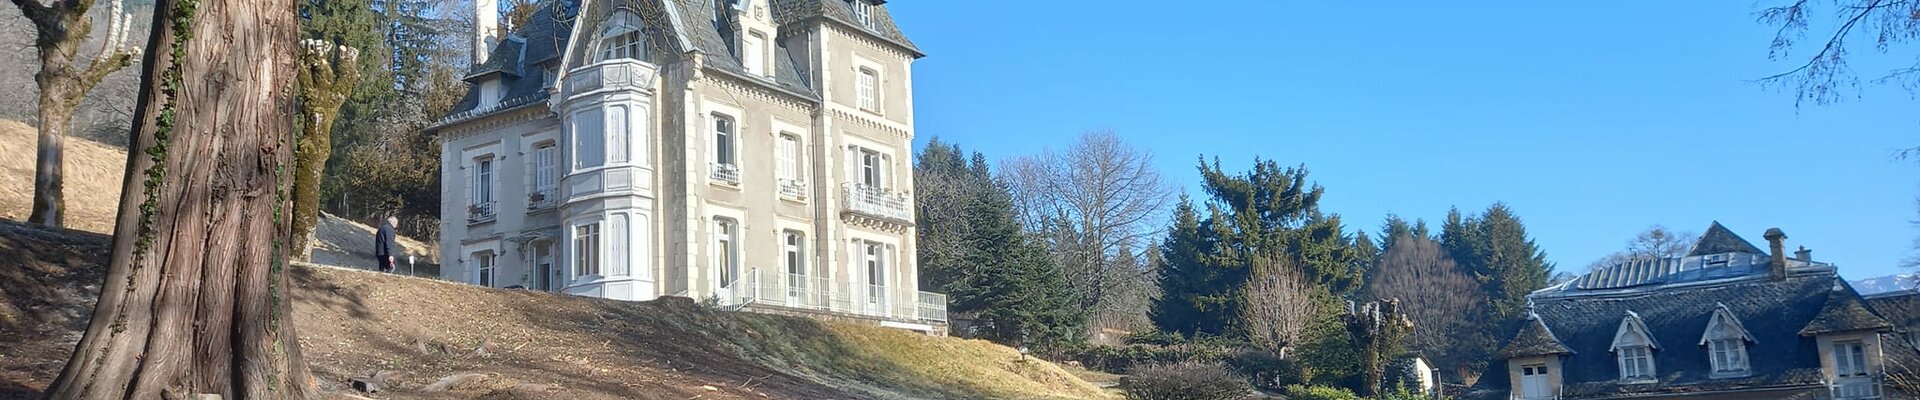 Toute les informations pour contacter le domaine du Castel Blanc à Vic-sur-Cère